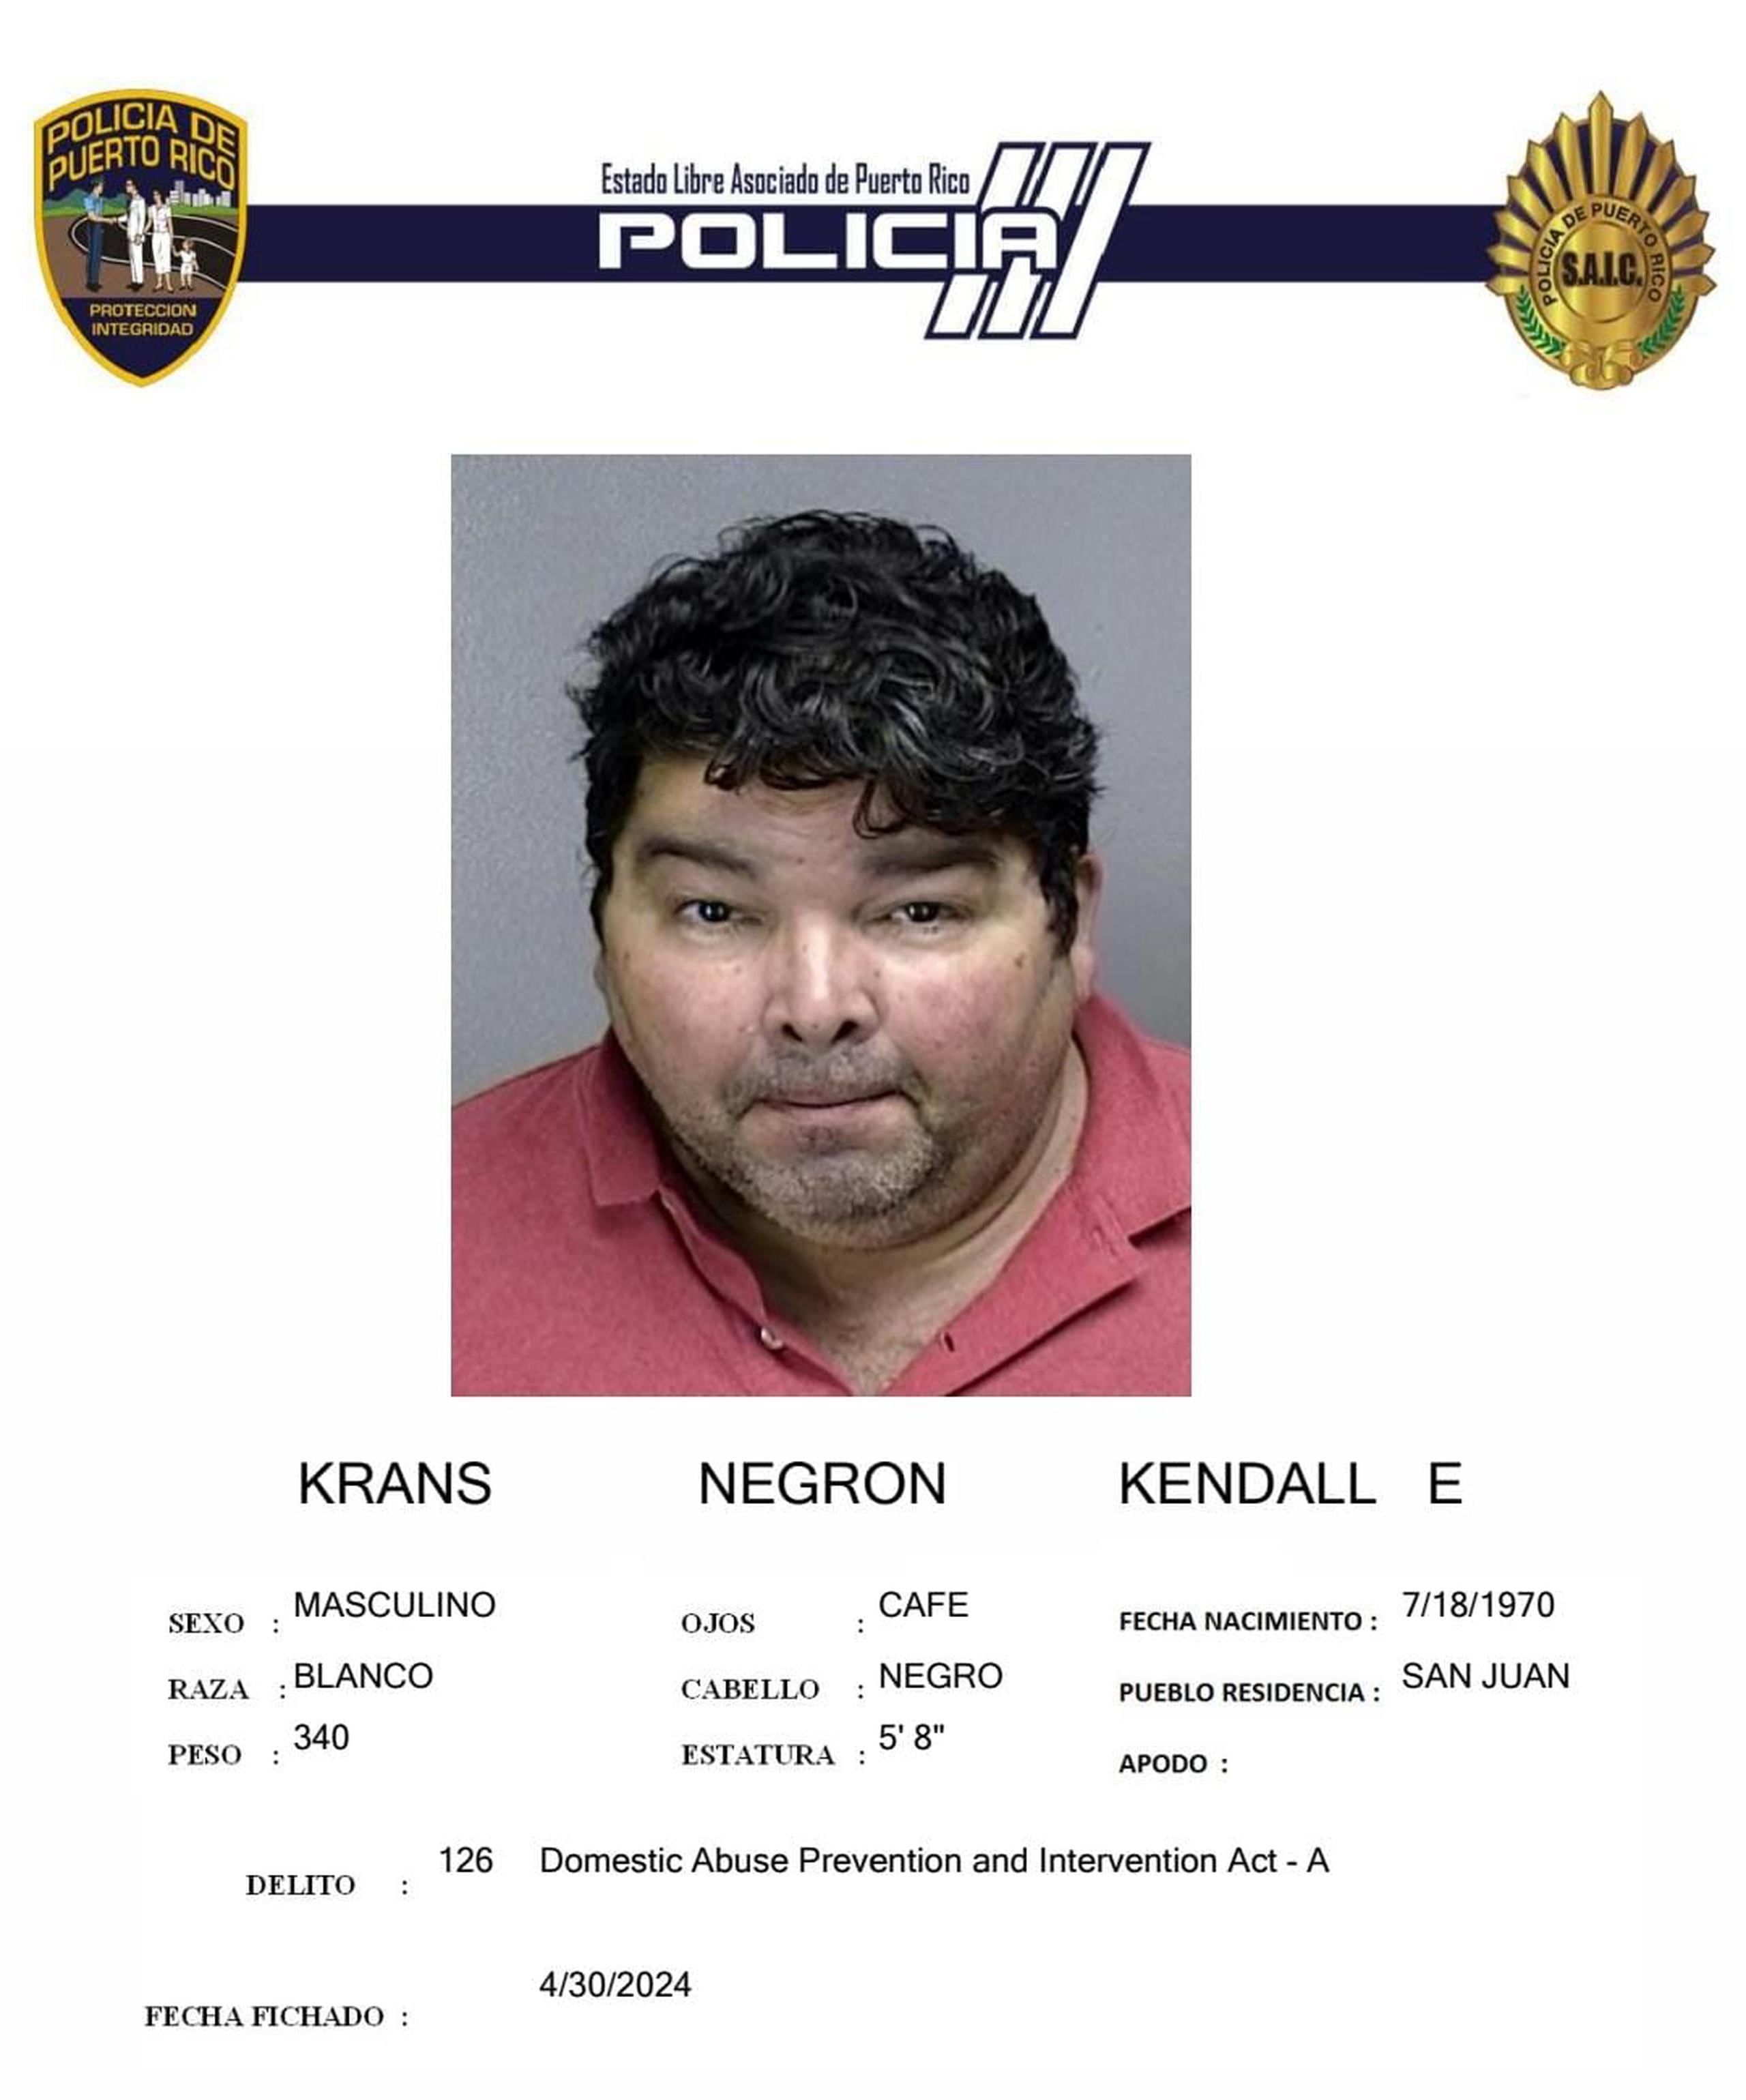 Kendall E. Krans Negrón enfrenta un cargo por maltrato conyugal.